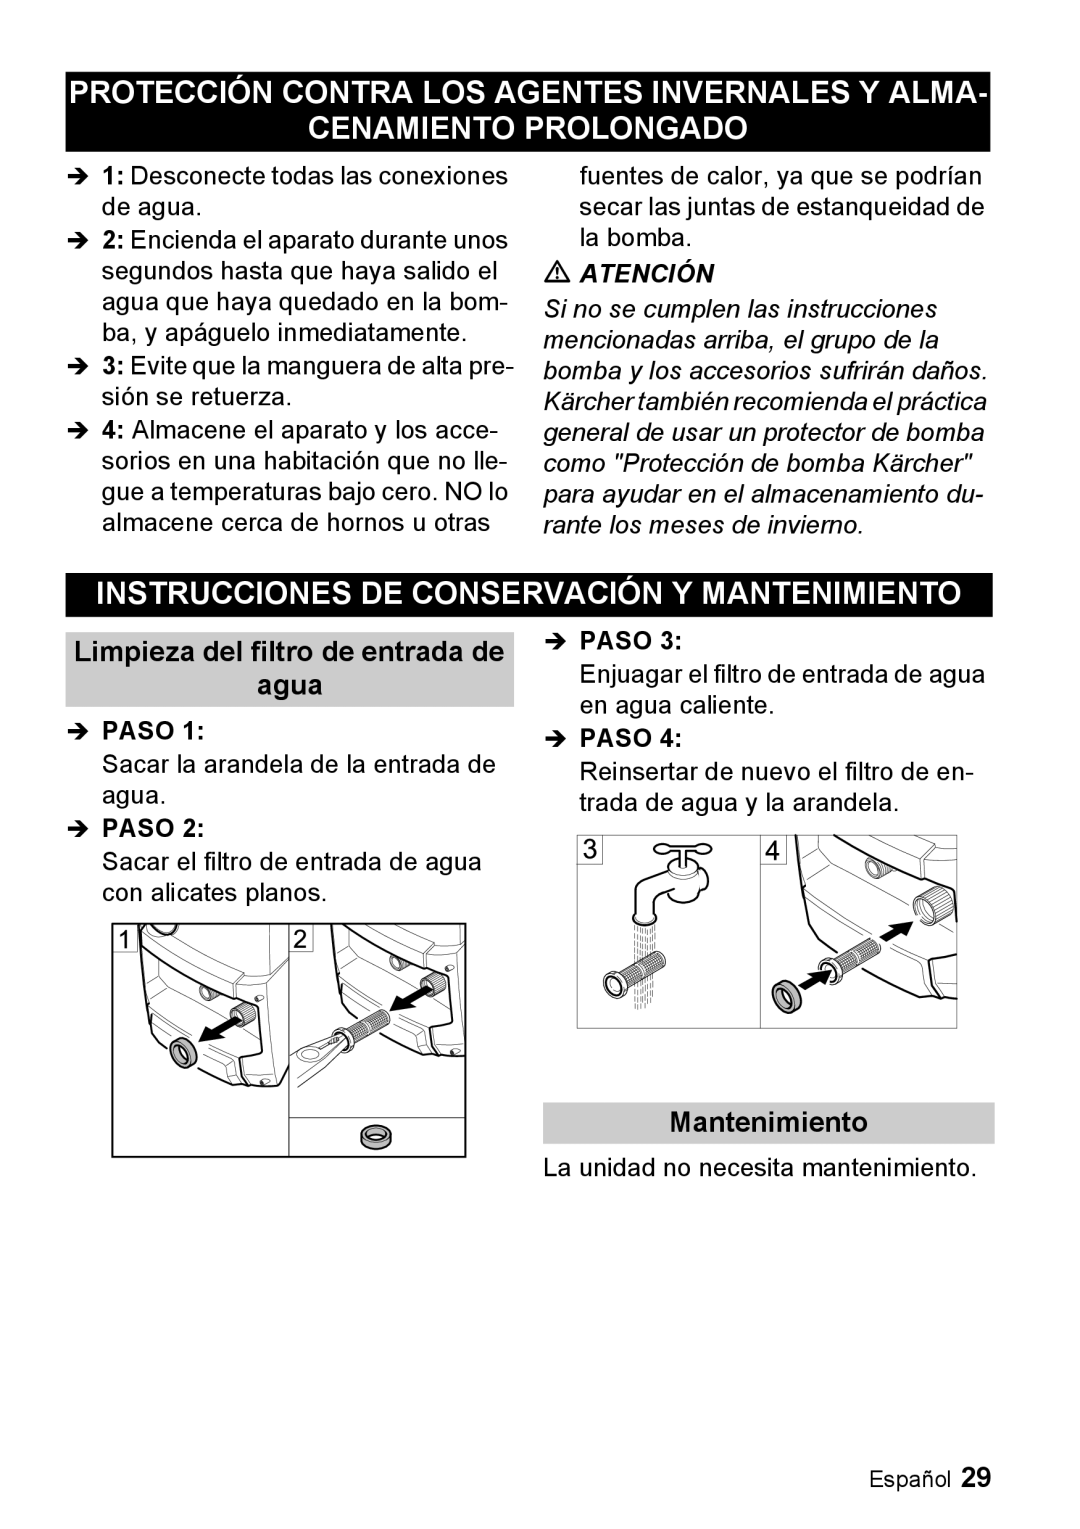 Karcher K 3.68 M manual Protección Contra Los Agentes Invernales Y Alma, Cenamiento Prolongado, Mantenimiento, Îpaso 